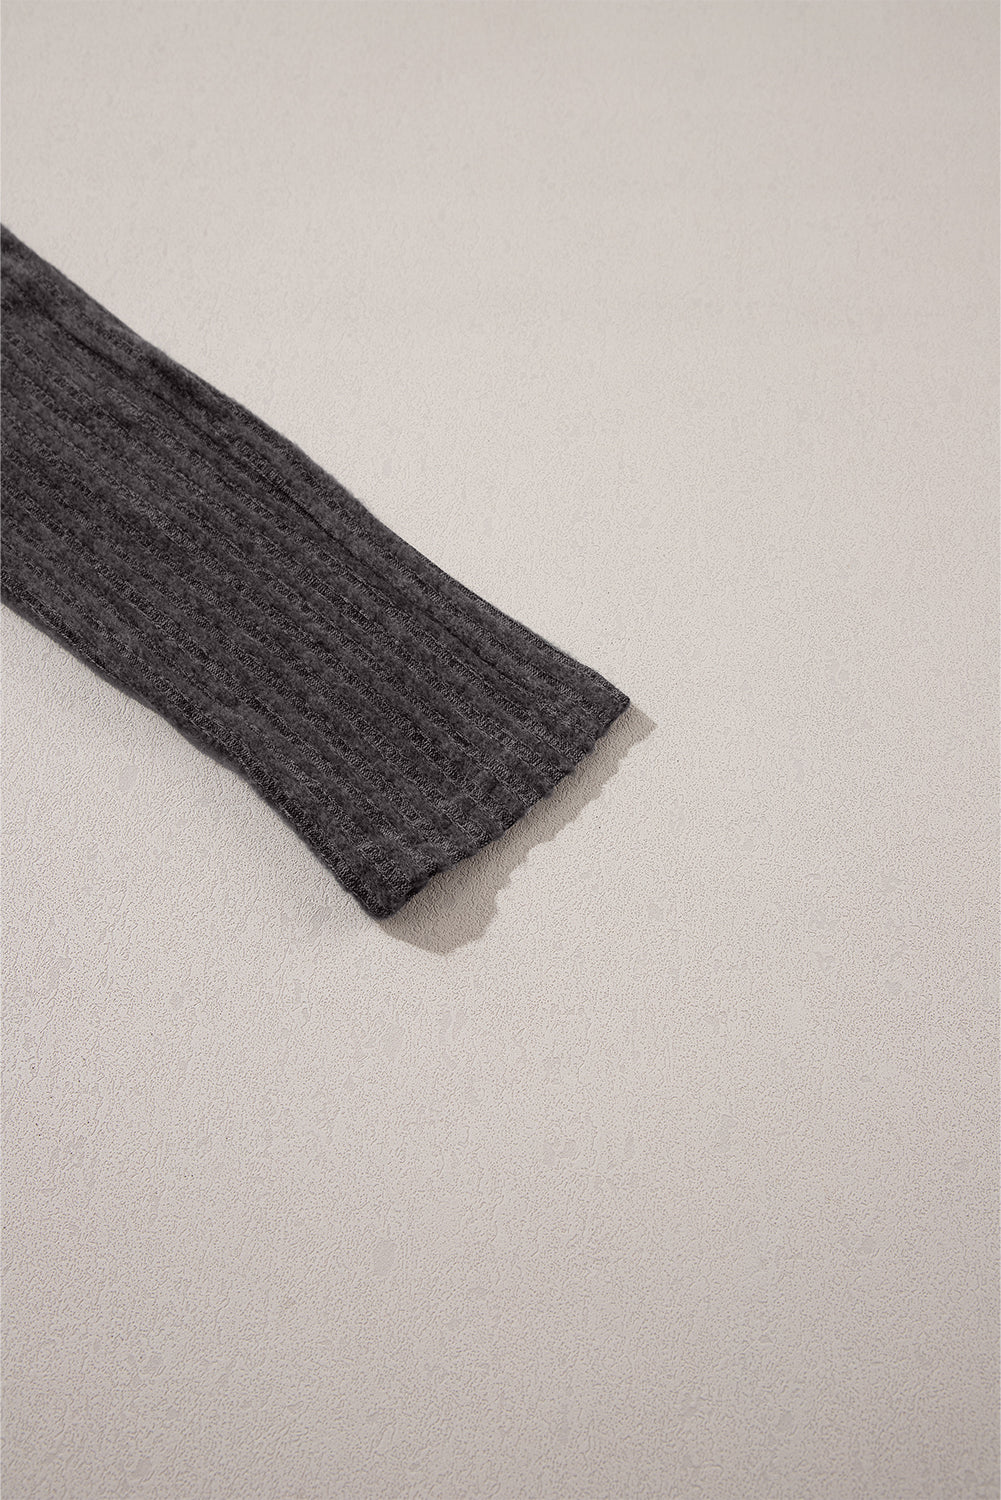 Tamno sive rebraste teksturirane pletene tajice sa širokim pojasom